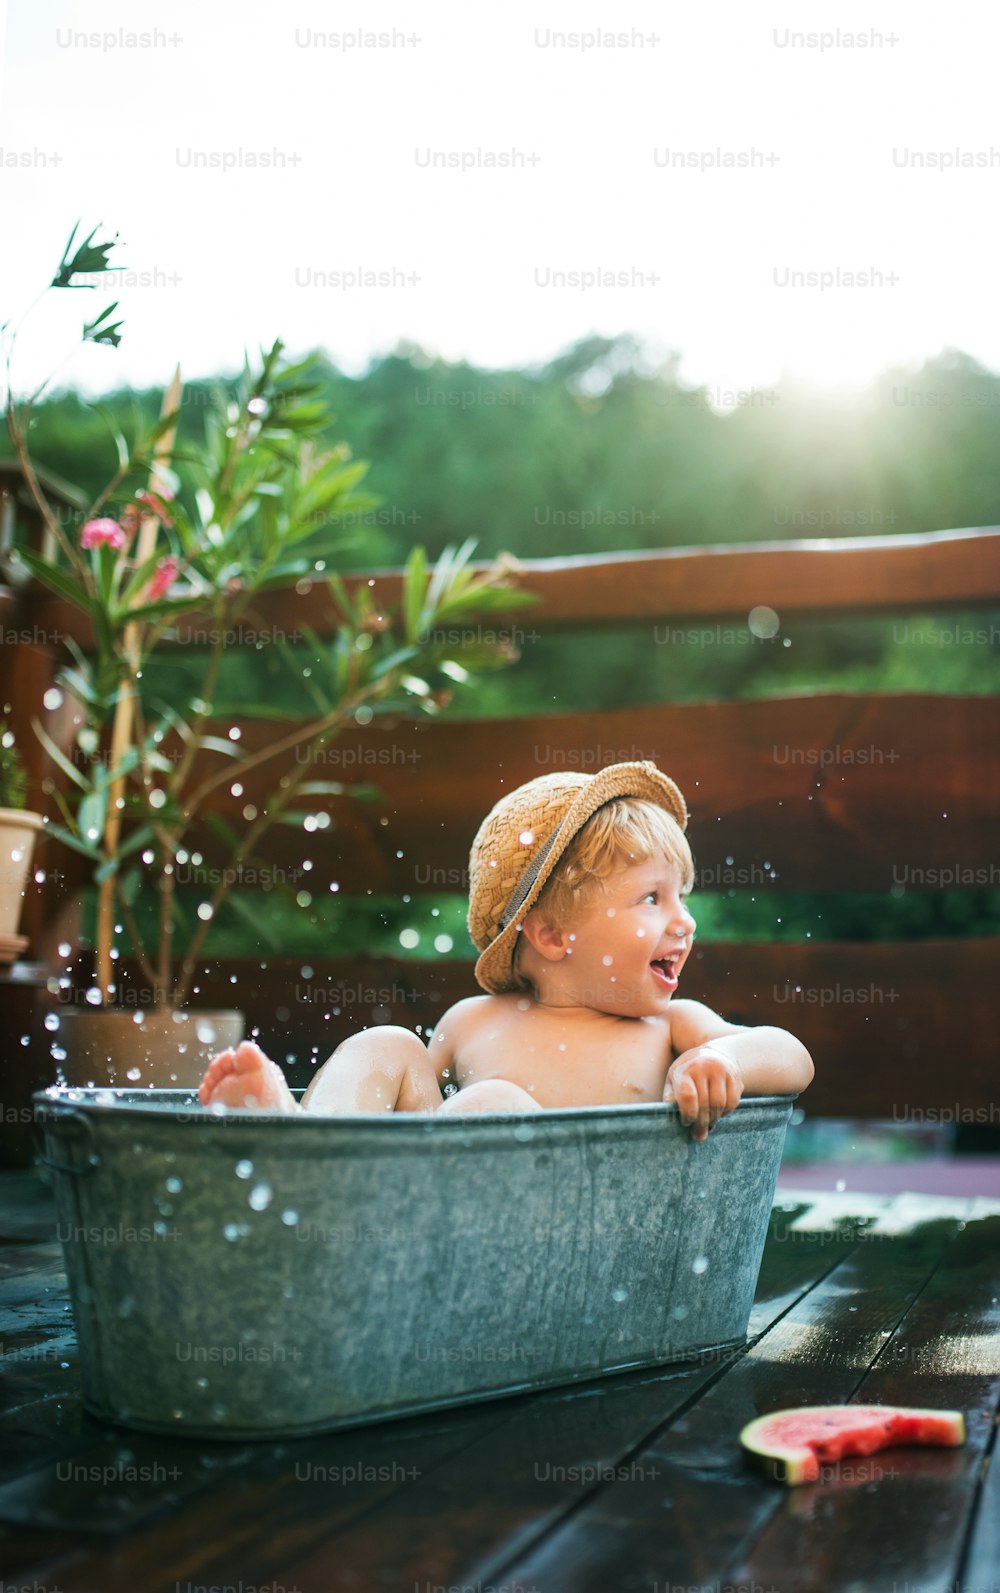 Heureux petit garçon avec un chapeau dans la baignoire à l’extérieur dans le jardin en été, mangeant de la pastèque.